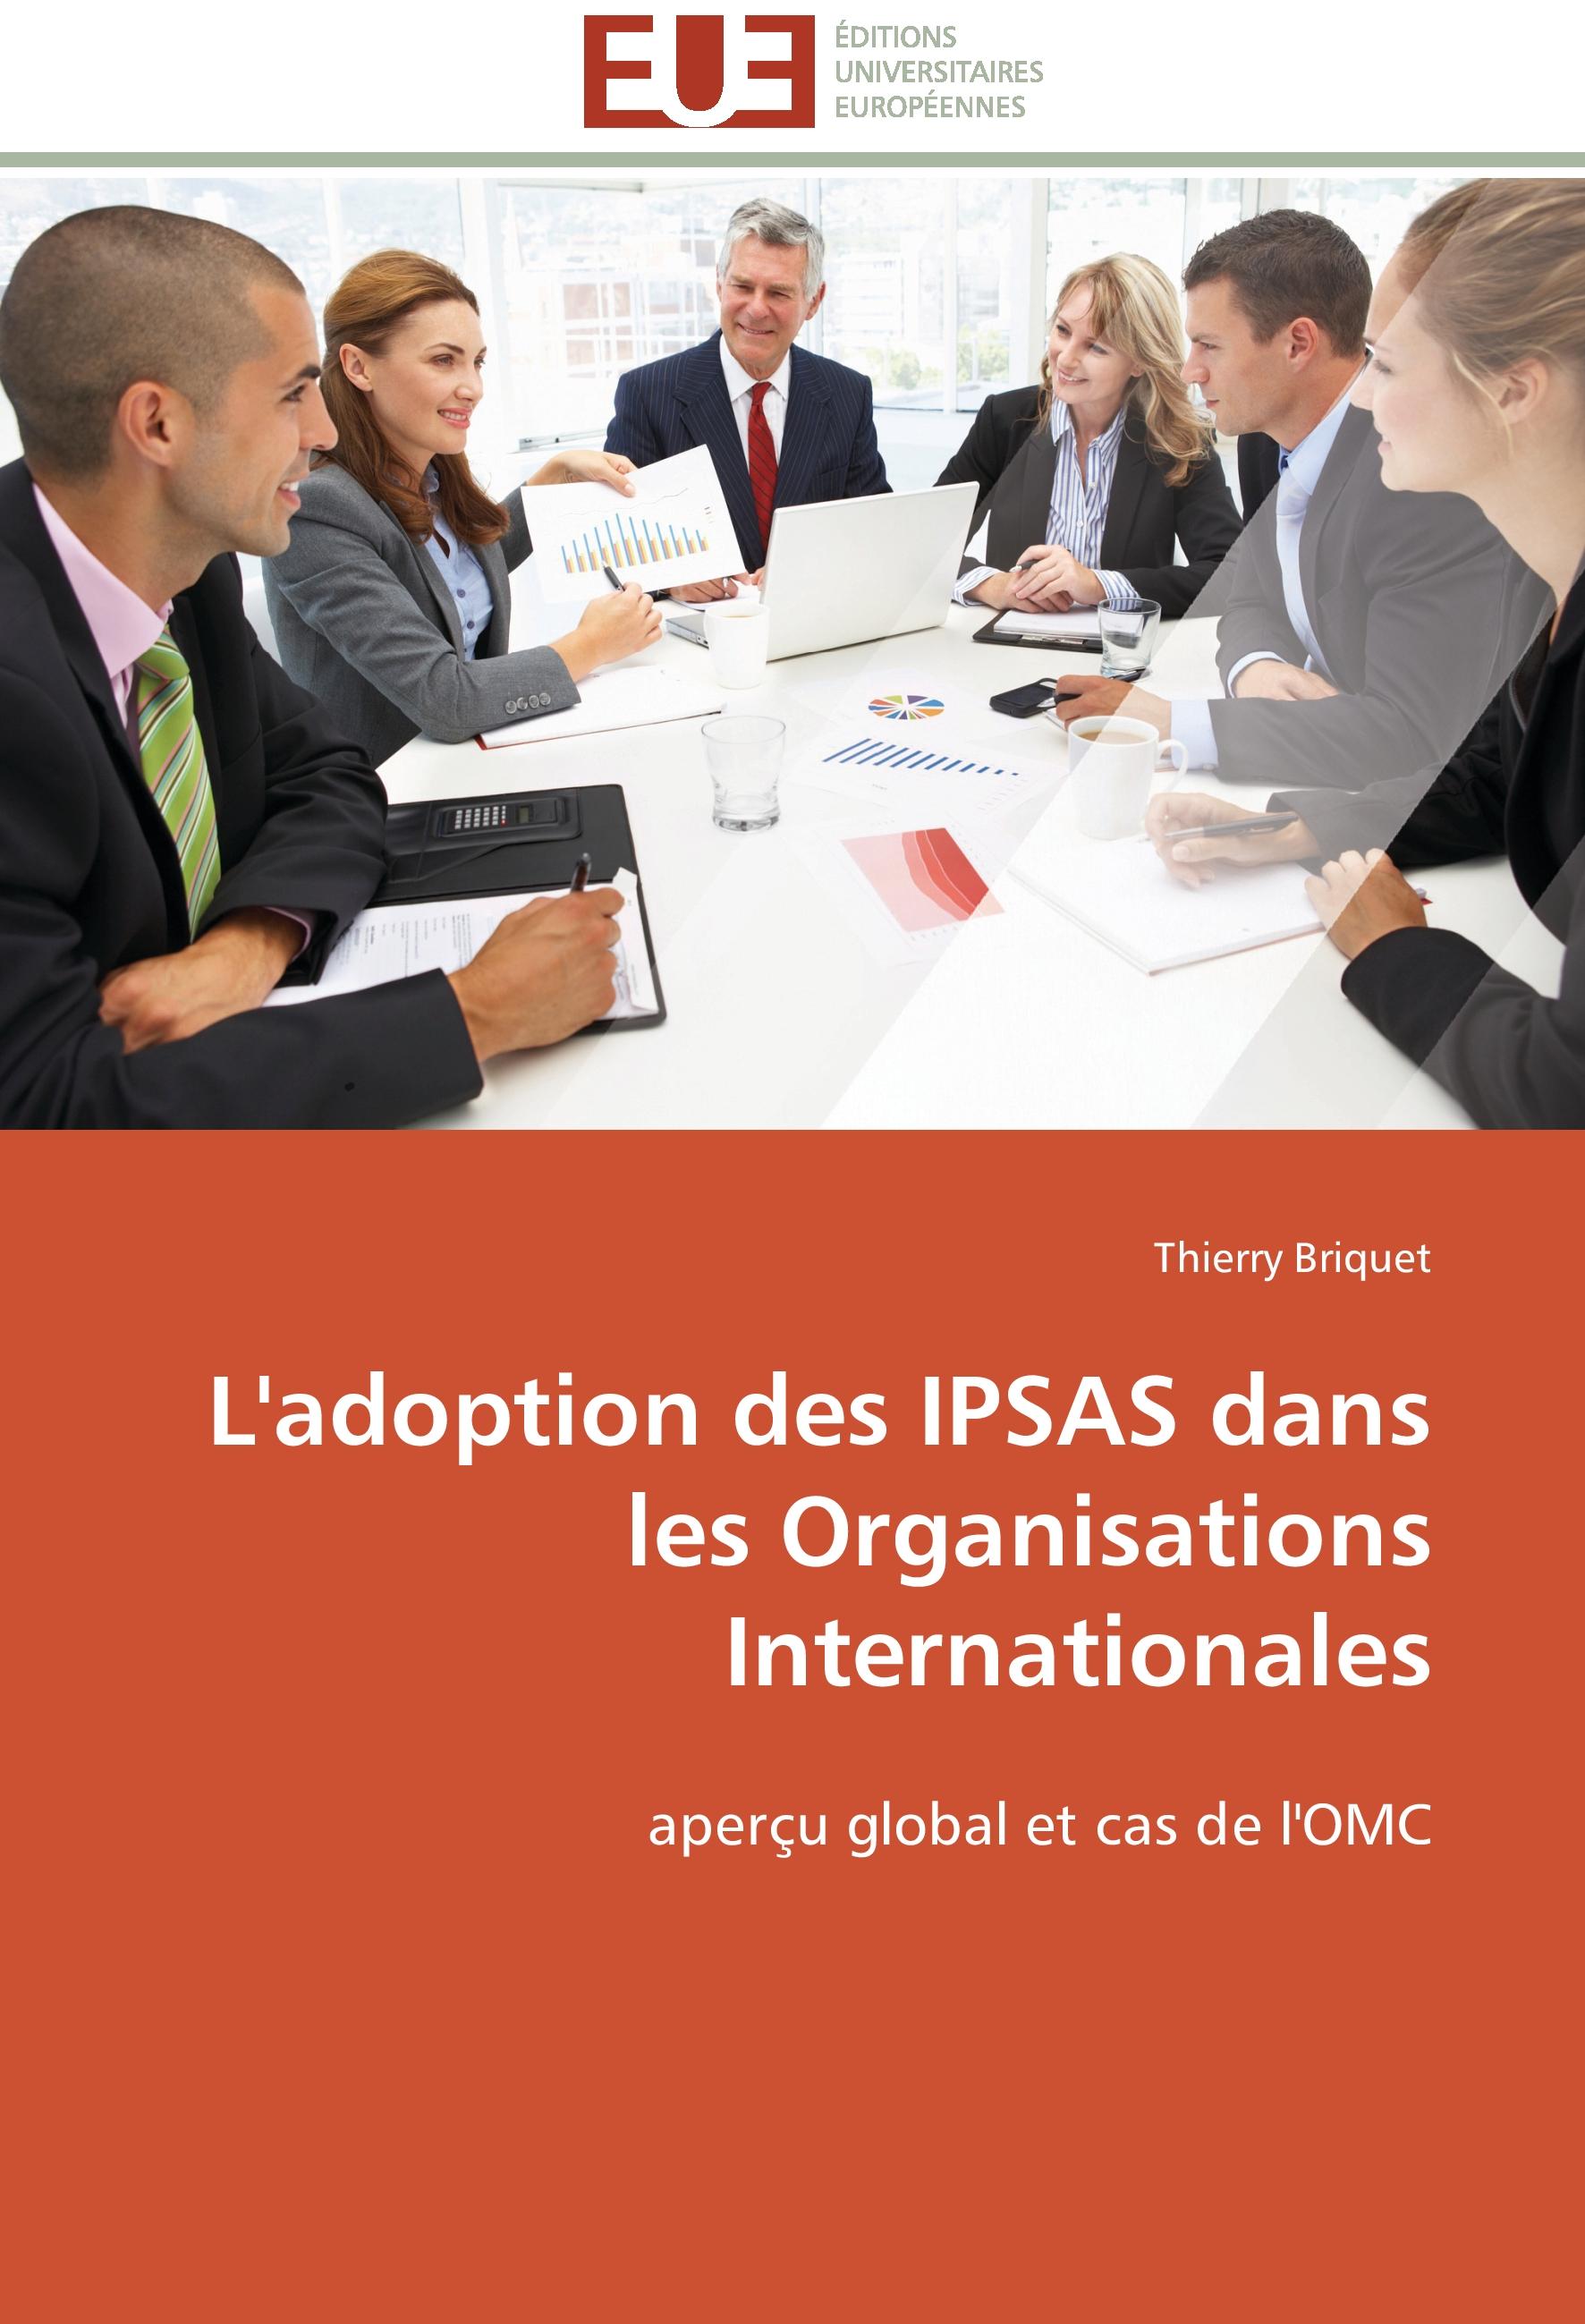 L adoption des IPSAS dans les Organisations Internationales - Thierry Briquet